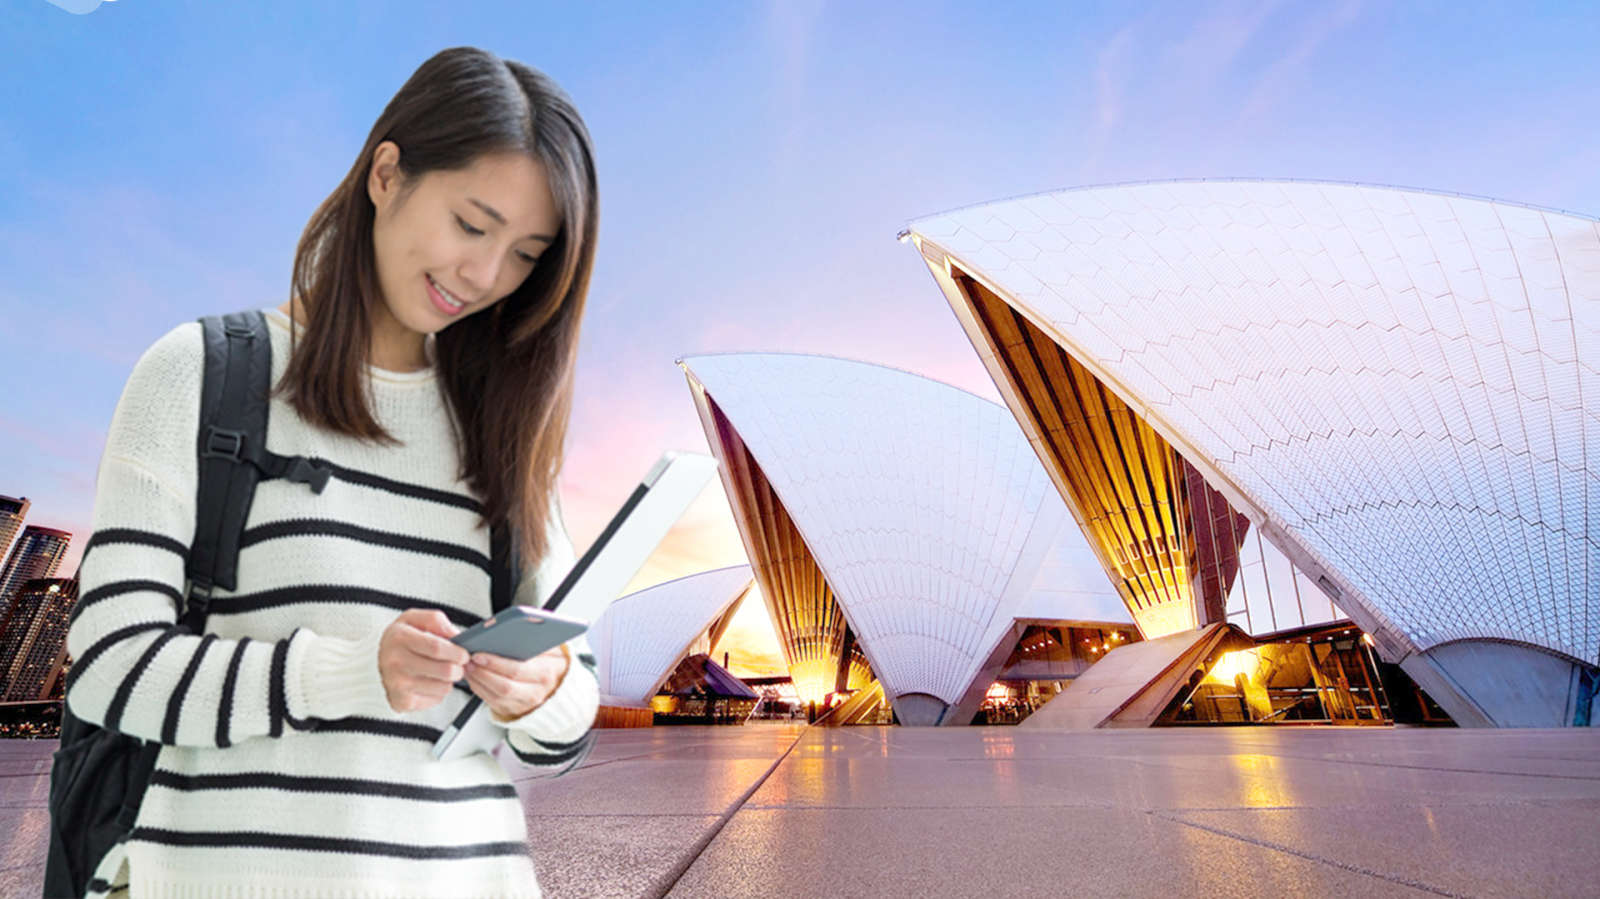 Australia tiếp tục thay đổi điều kiện cấp thị thực sinh viên